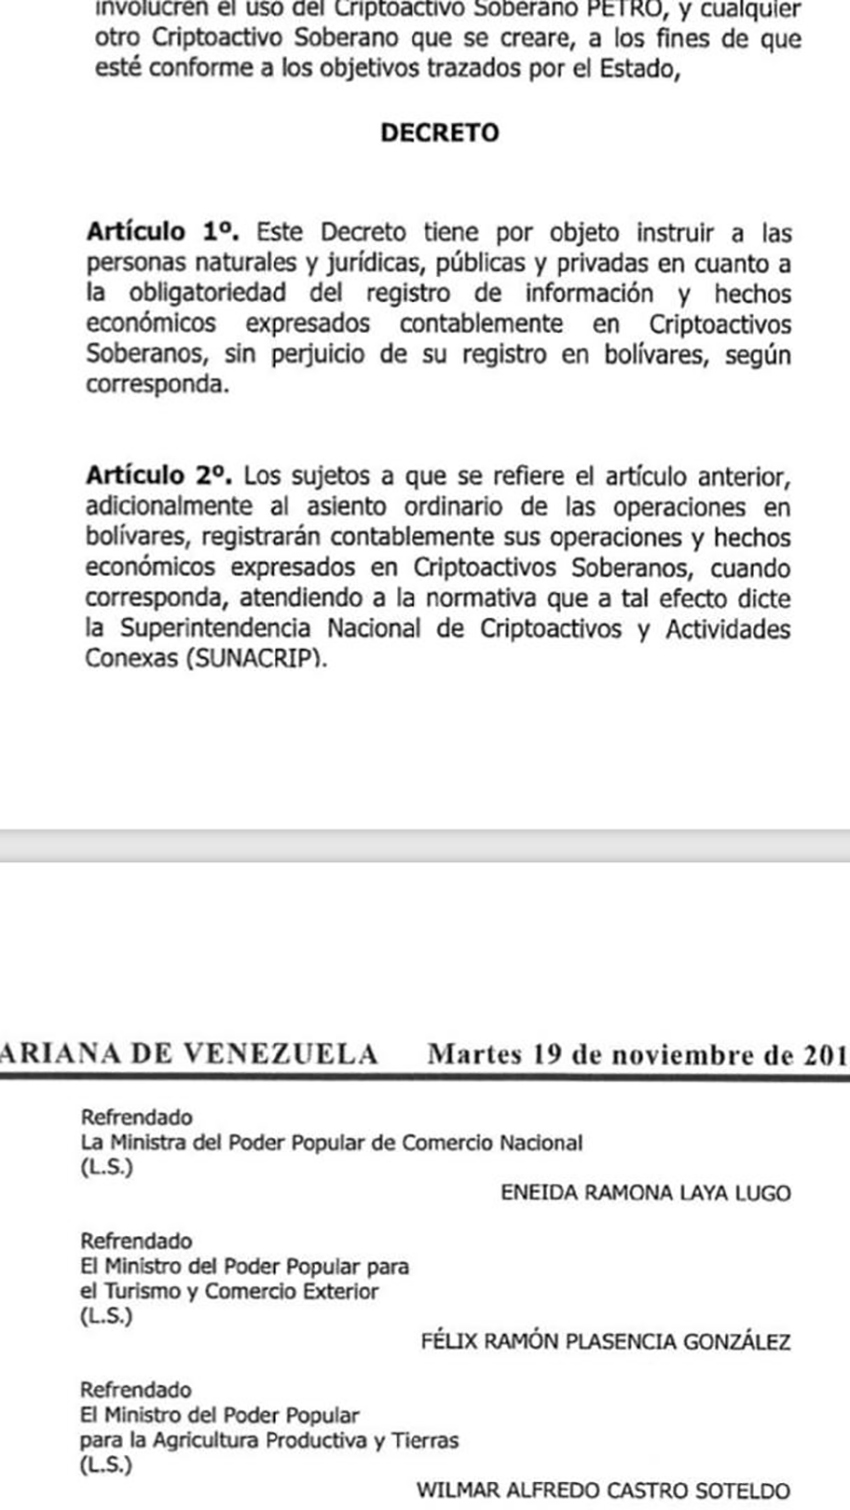 Publican en Gaceta Oficial decreto que obliga a llevar información contable en Petros